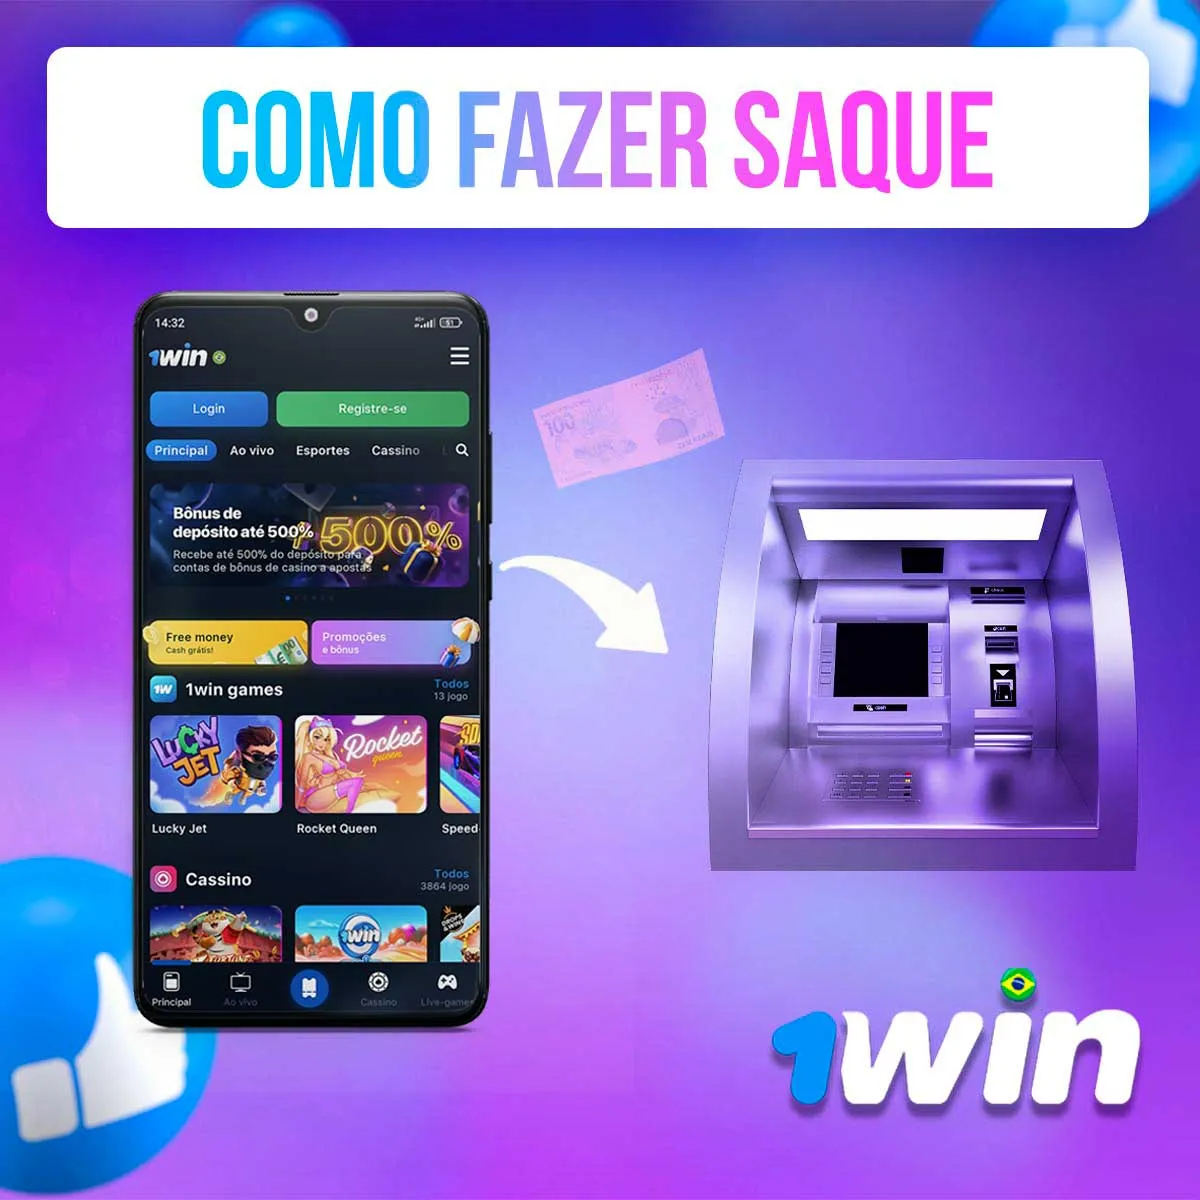 Uma visão geral de como fazer saque na versão mobile da casa de apostas 1win no Brasil